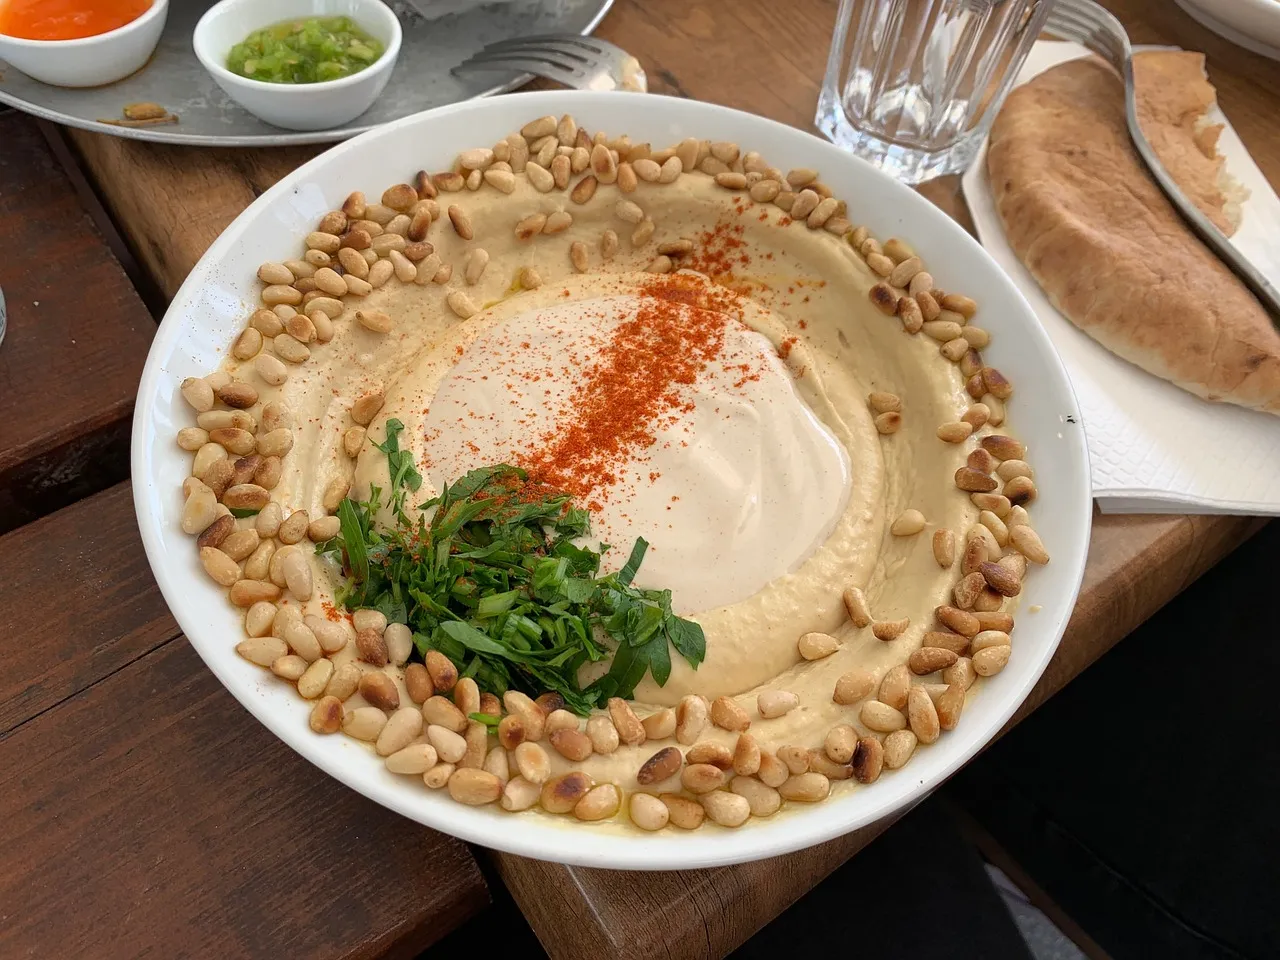 Hummus with tahini. Photo by danad94d